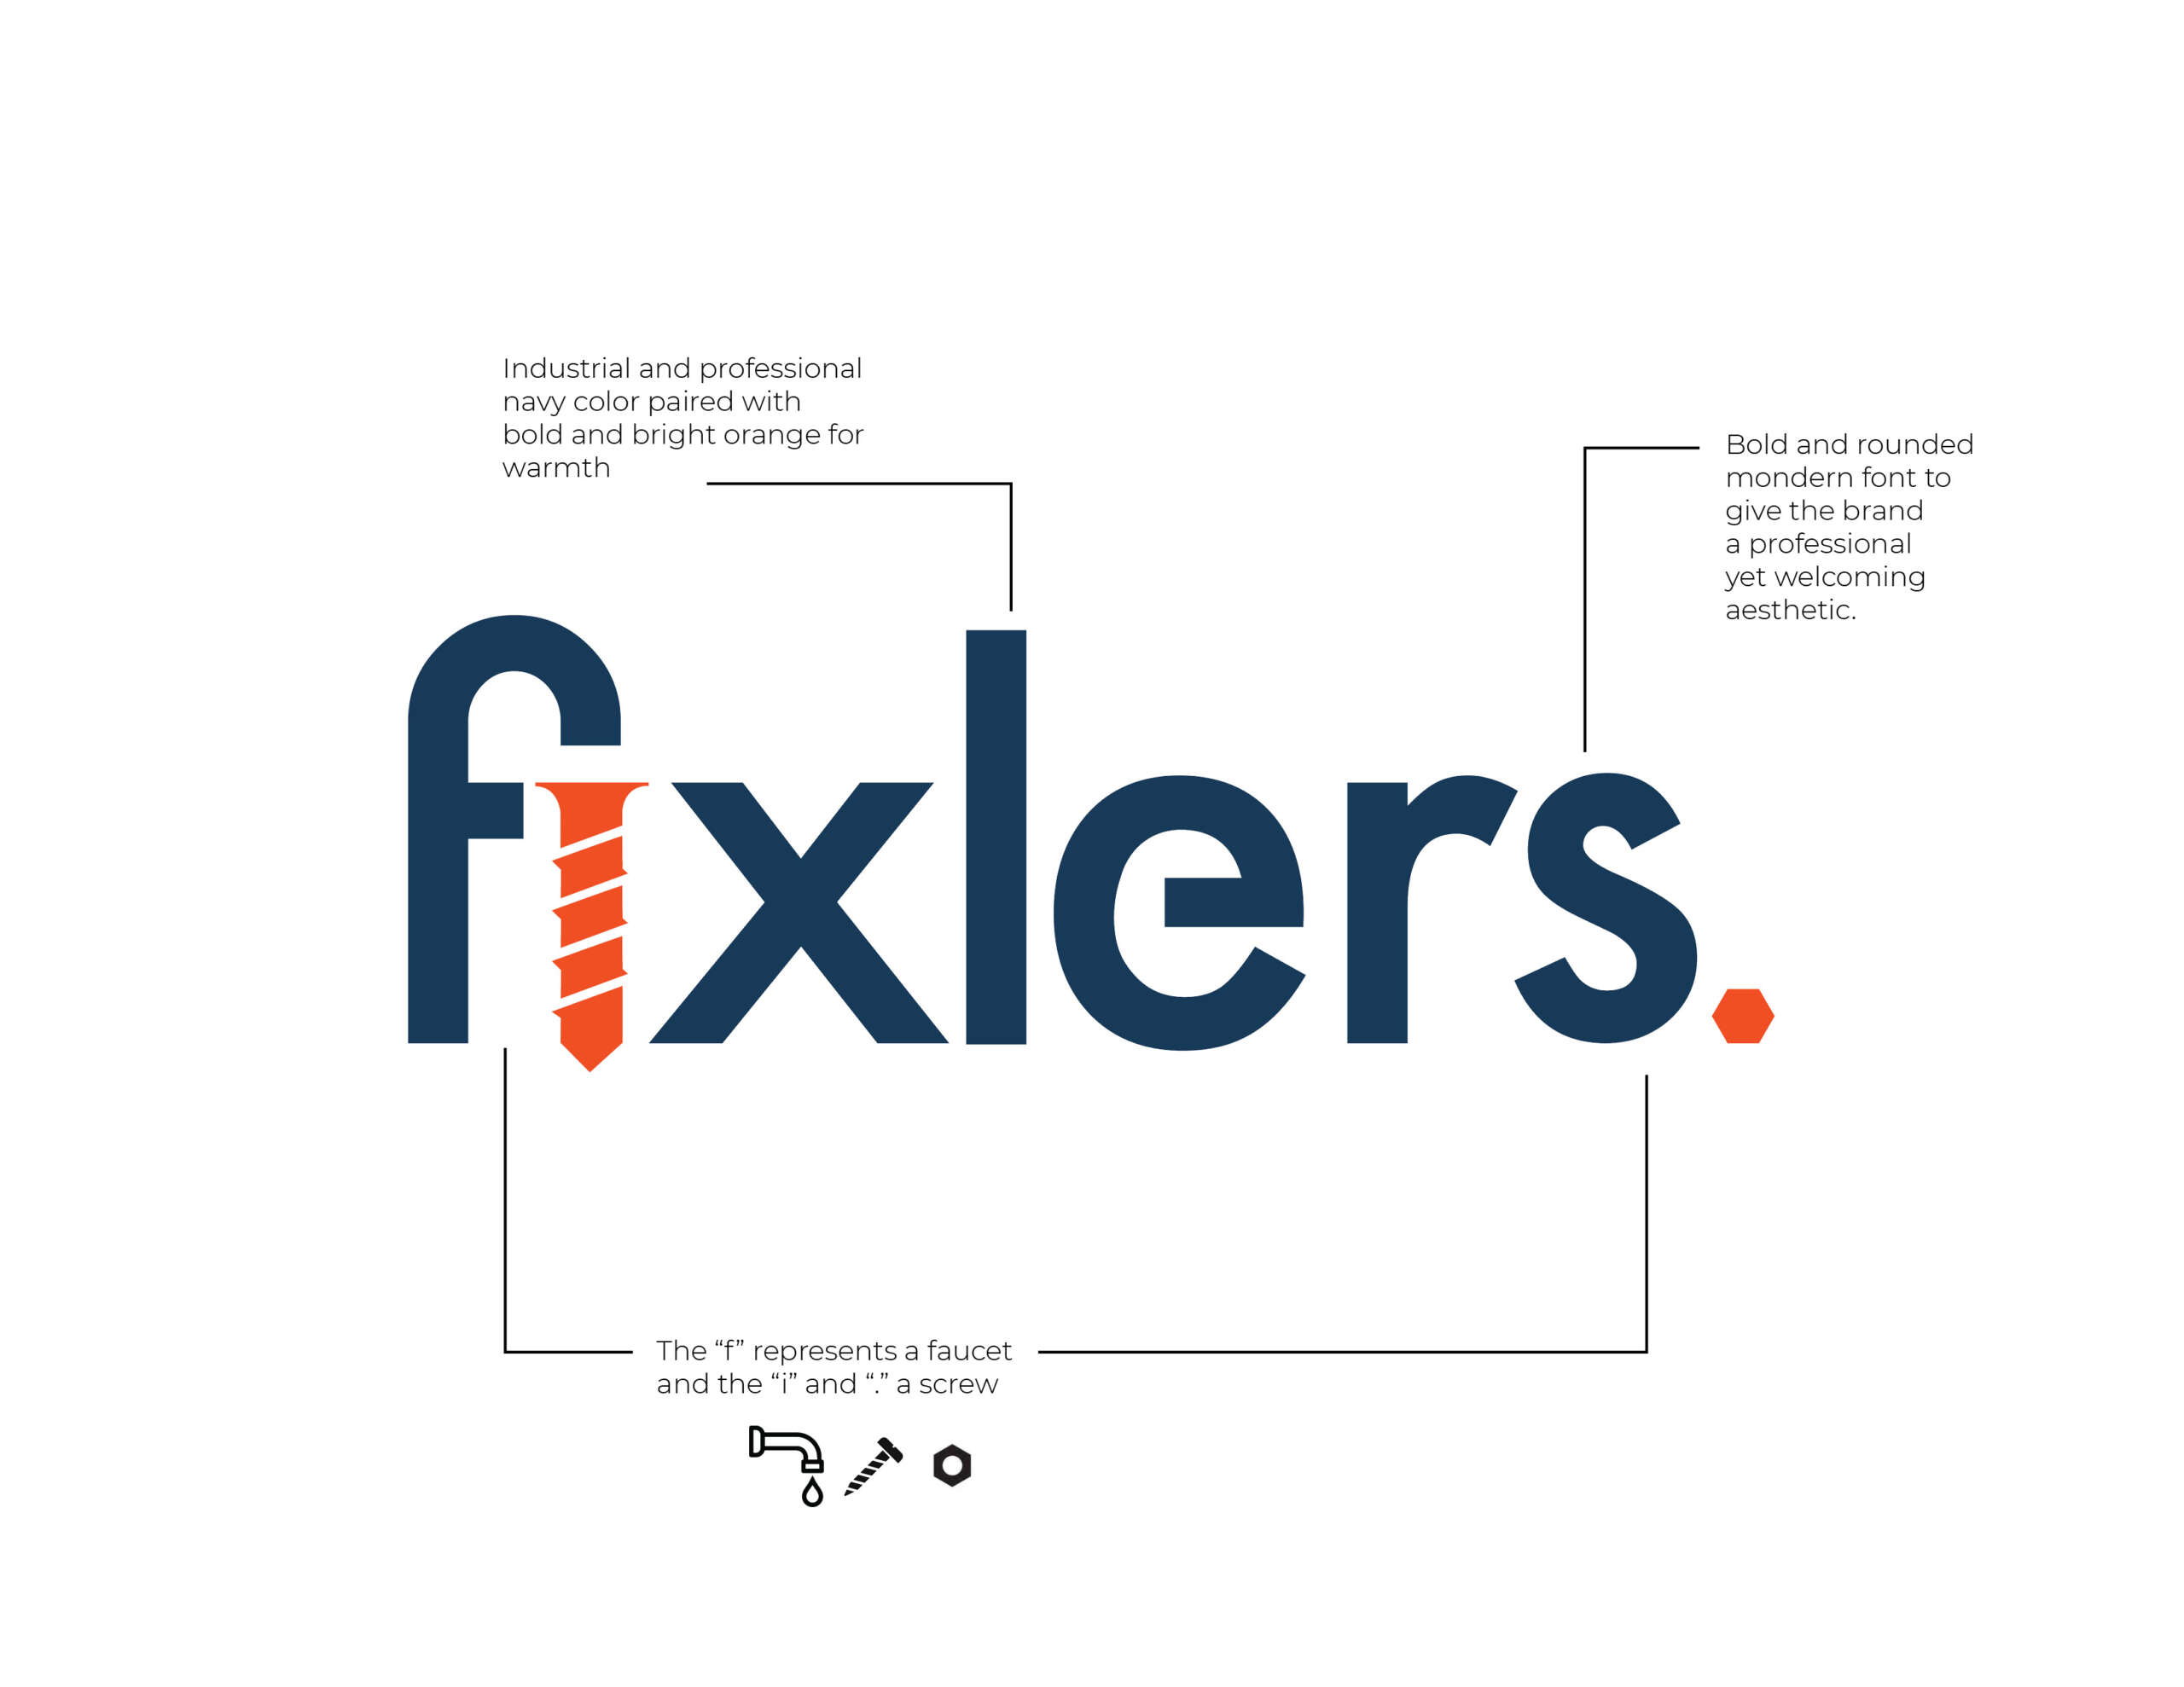 Fixlers logo breakdown